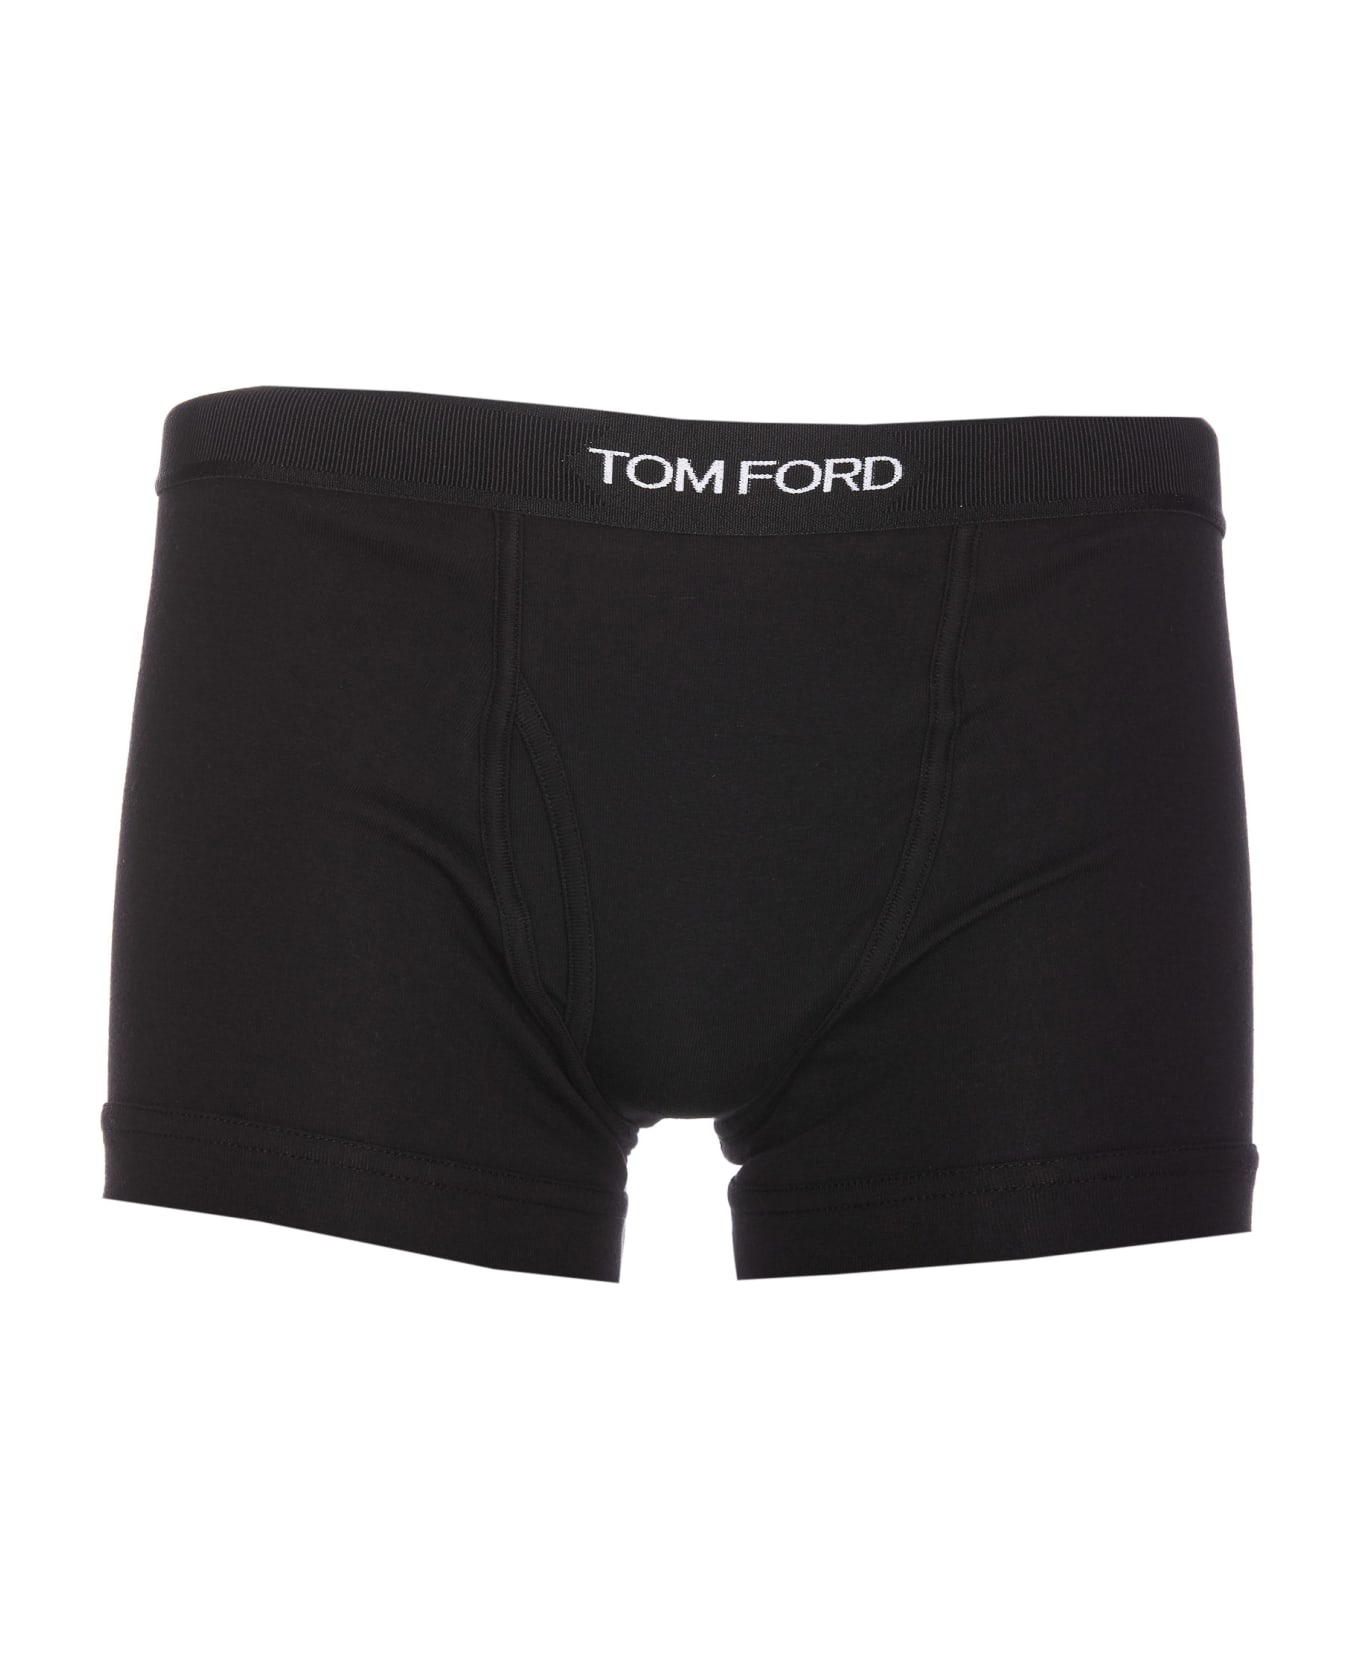 Tom Ford Bipack Logo Boxer - Black